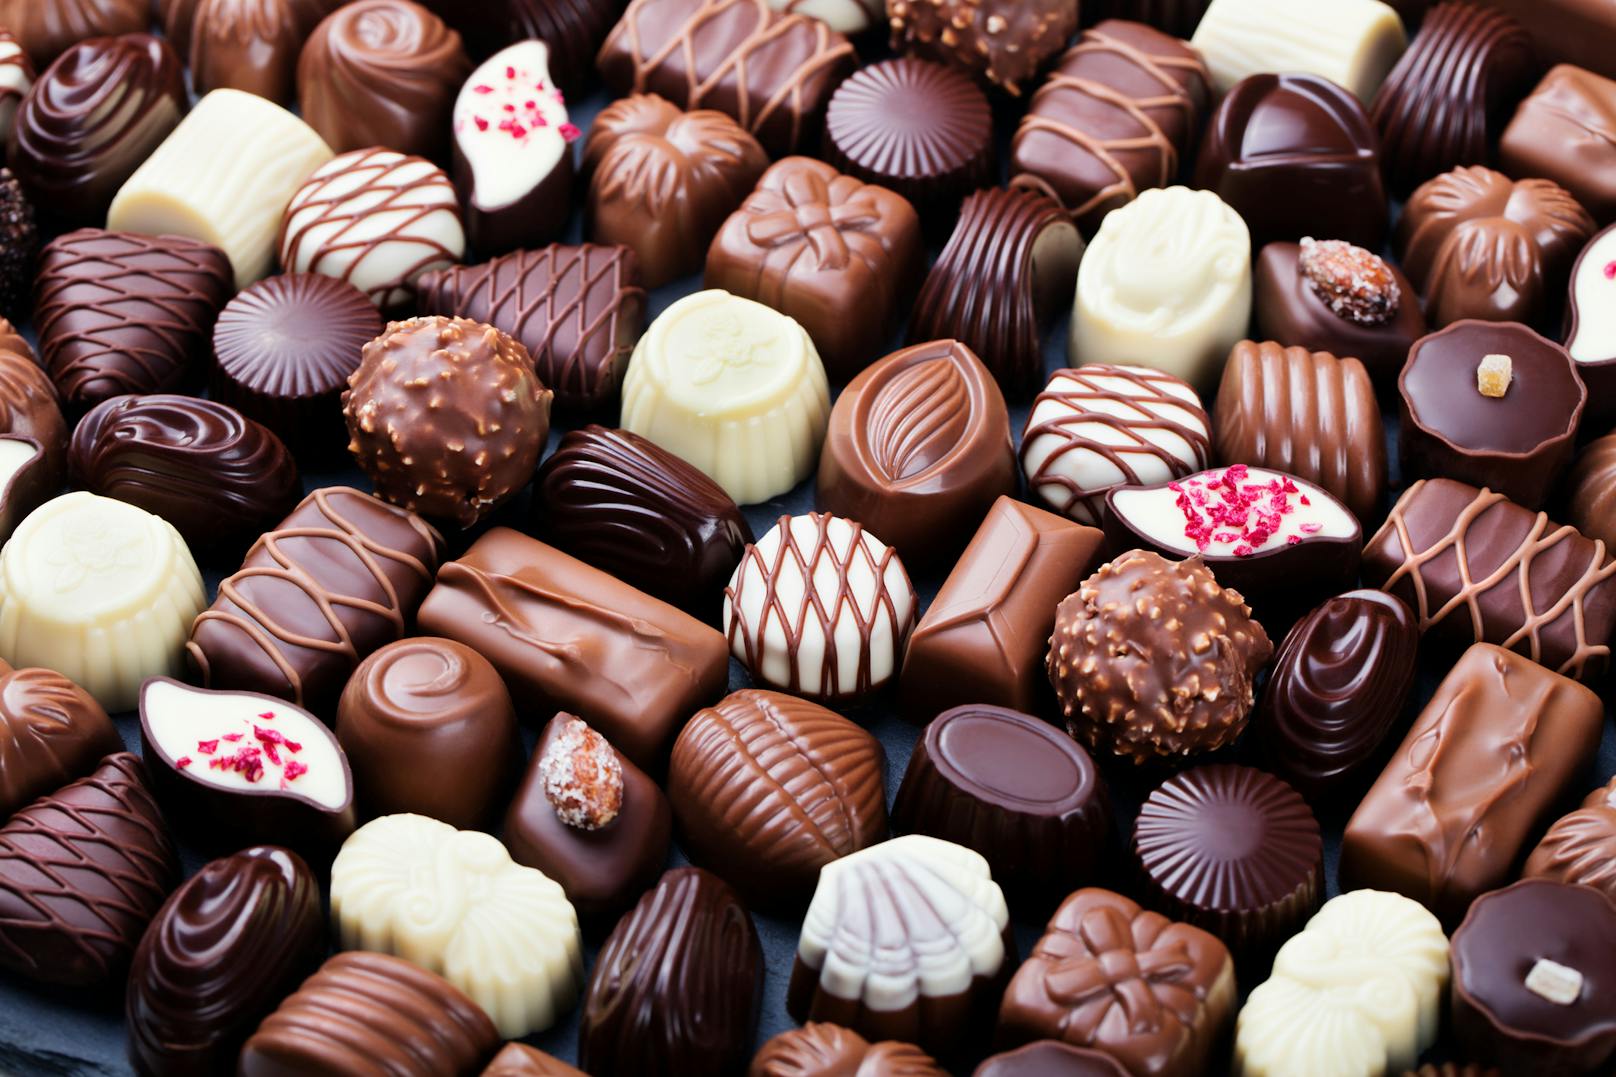 Am 7.7. zelebriert Österreich seit 2009 alljährlich den Tag der Schokolade. 